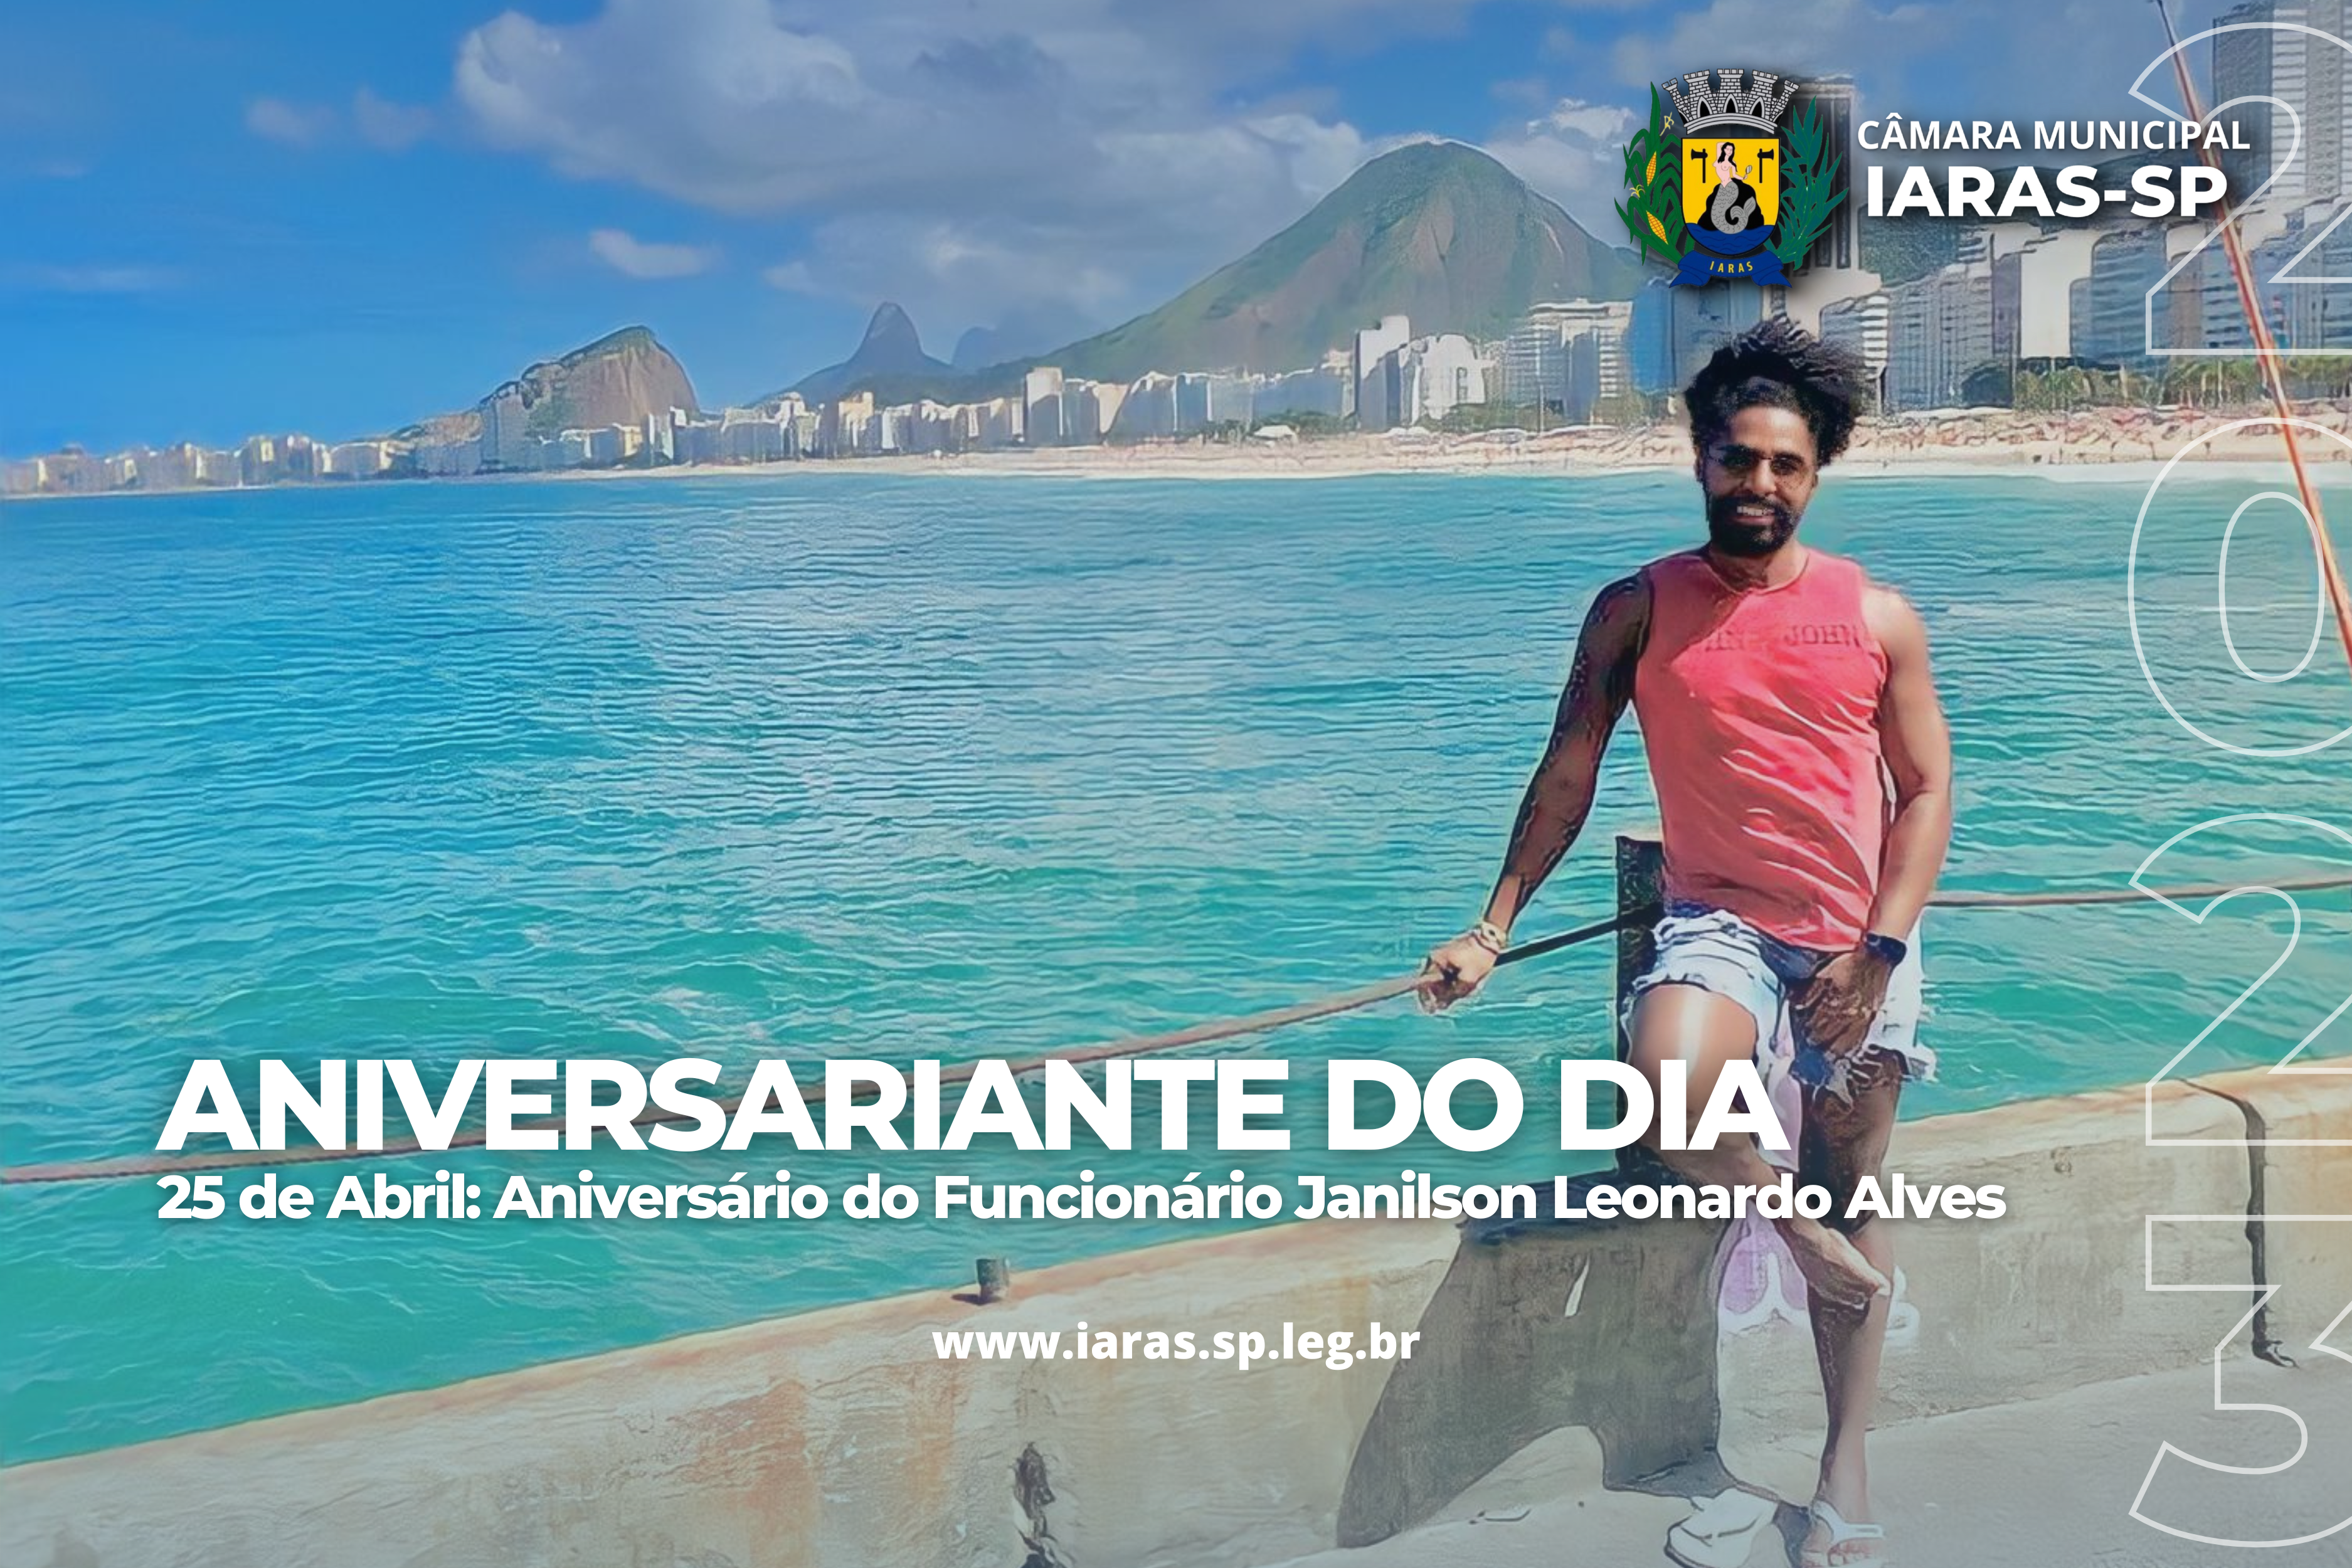 25 de Abril: Aniversário do funcionário Janilson Leonardo Alves